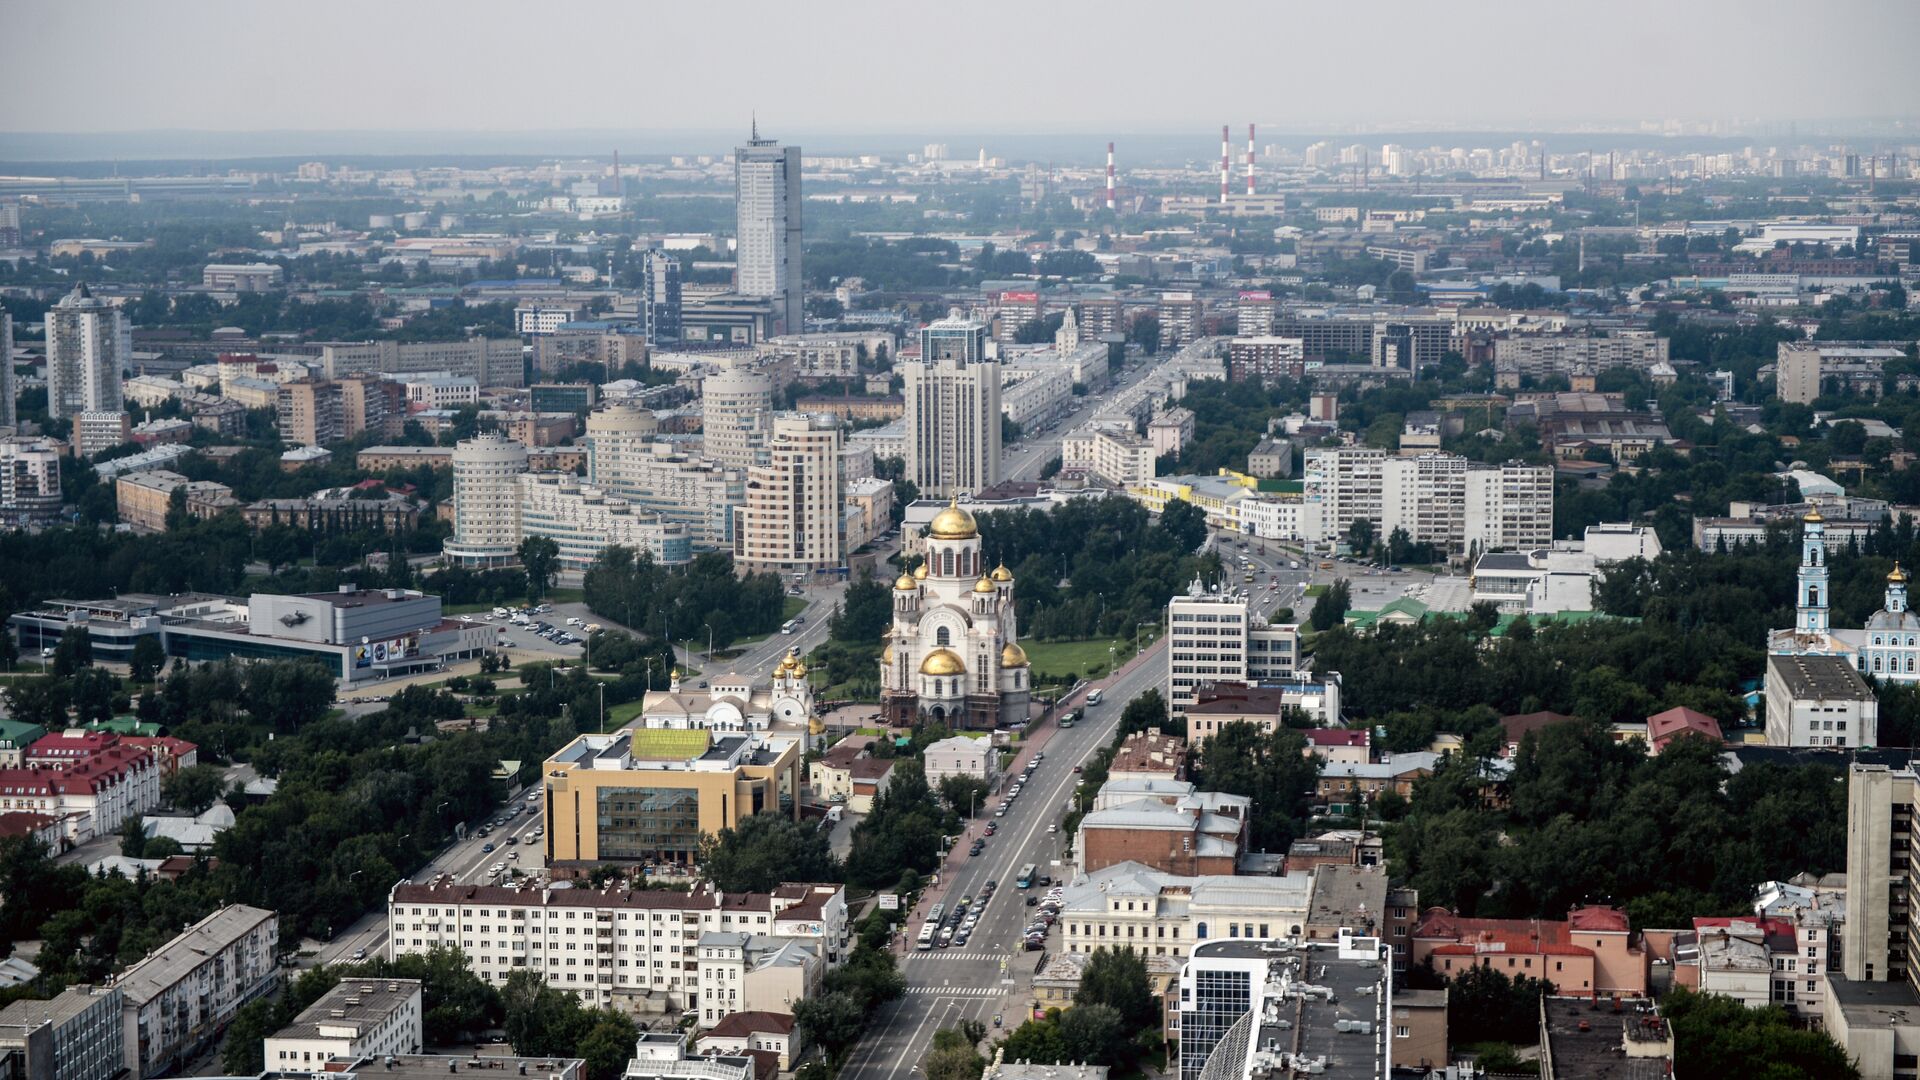 Вид на город со смотровой площадки бизнес-центра Высоцкий - Sputnik Lietuva, 1920, 31.05.2021